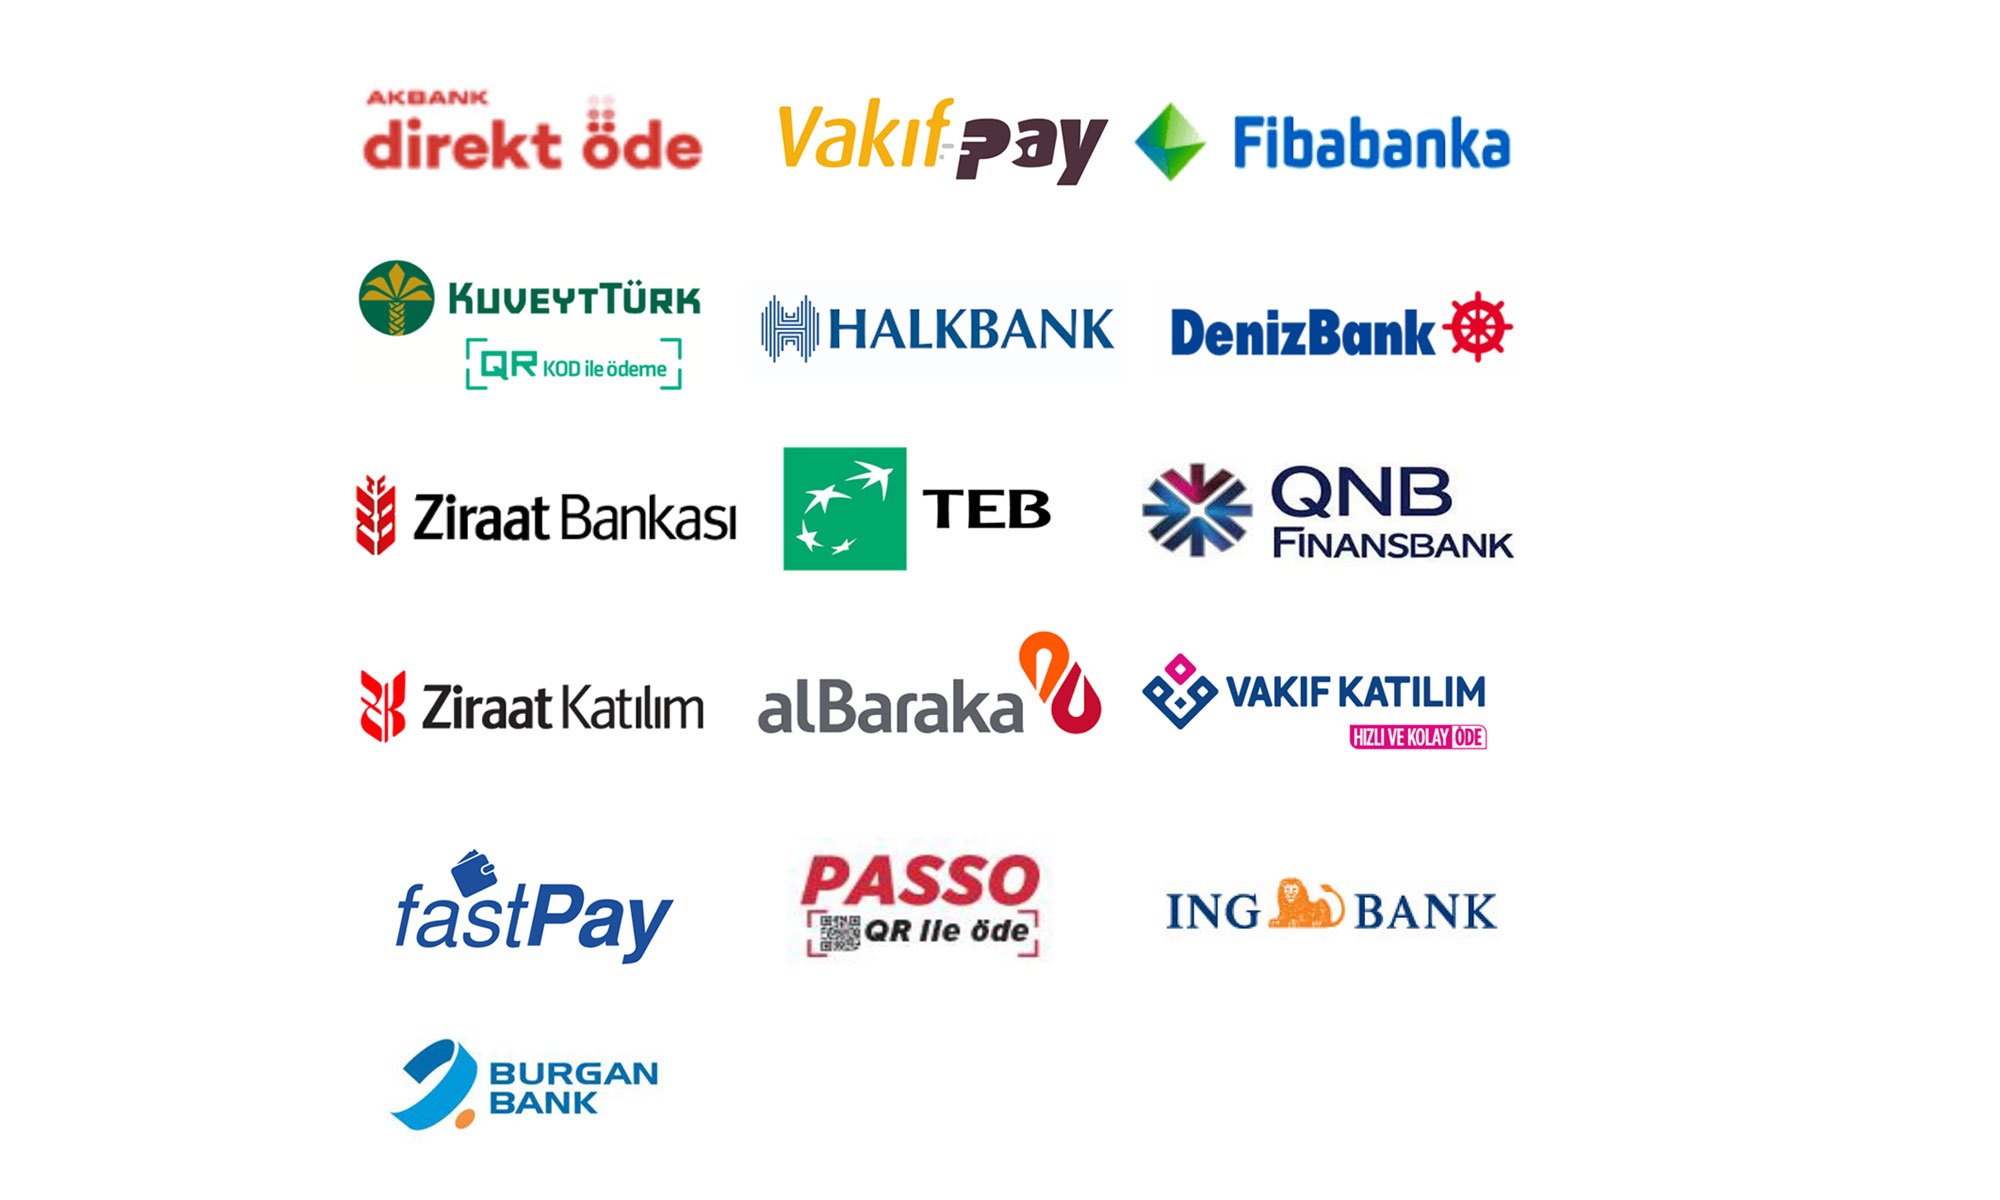 akbank-albaraka-yapi-kredi-vakif-katilim-ing-denizbank-ziraat-bankasi-qnb-finansbank-garanti-bbva-vakifbank.jpg